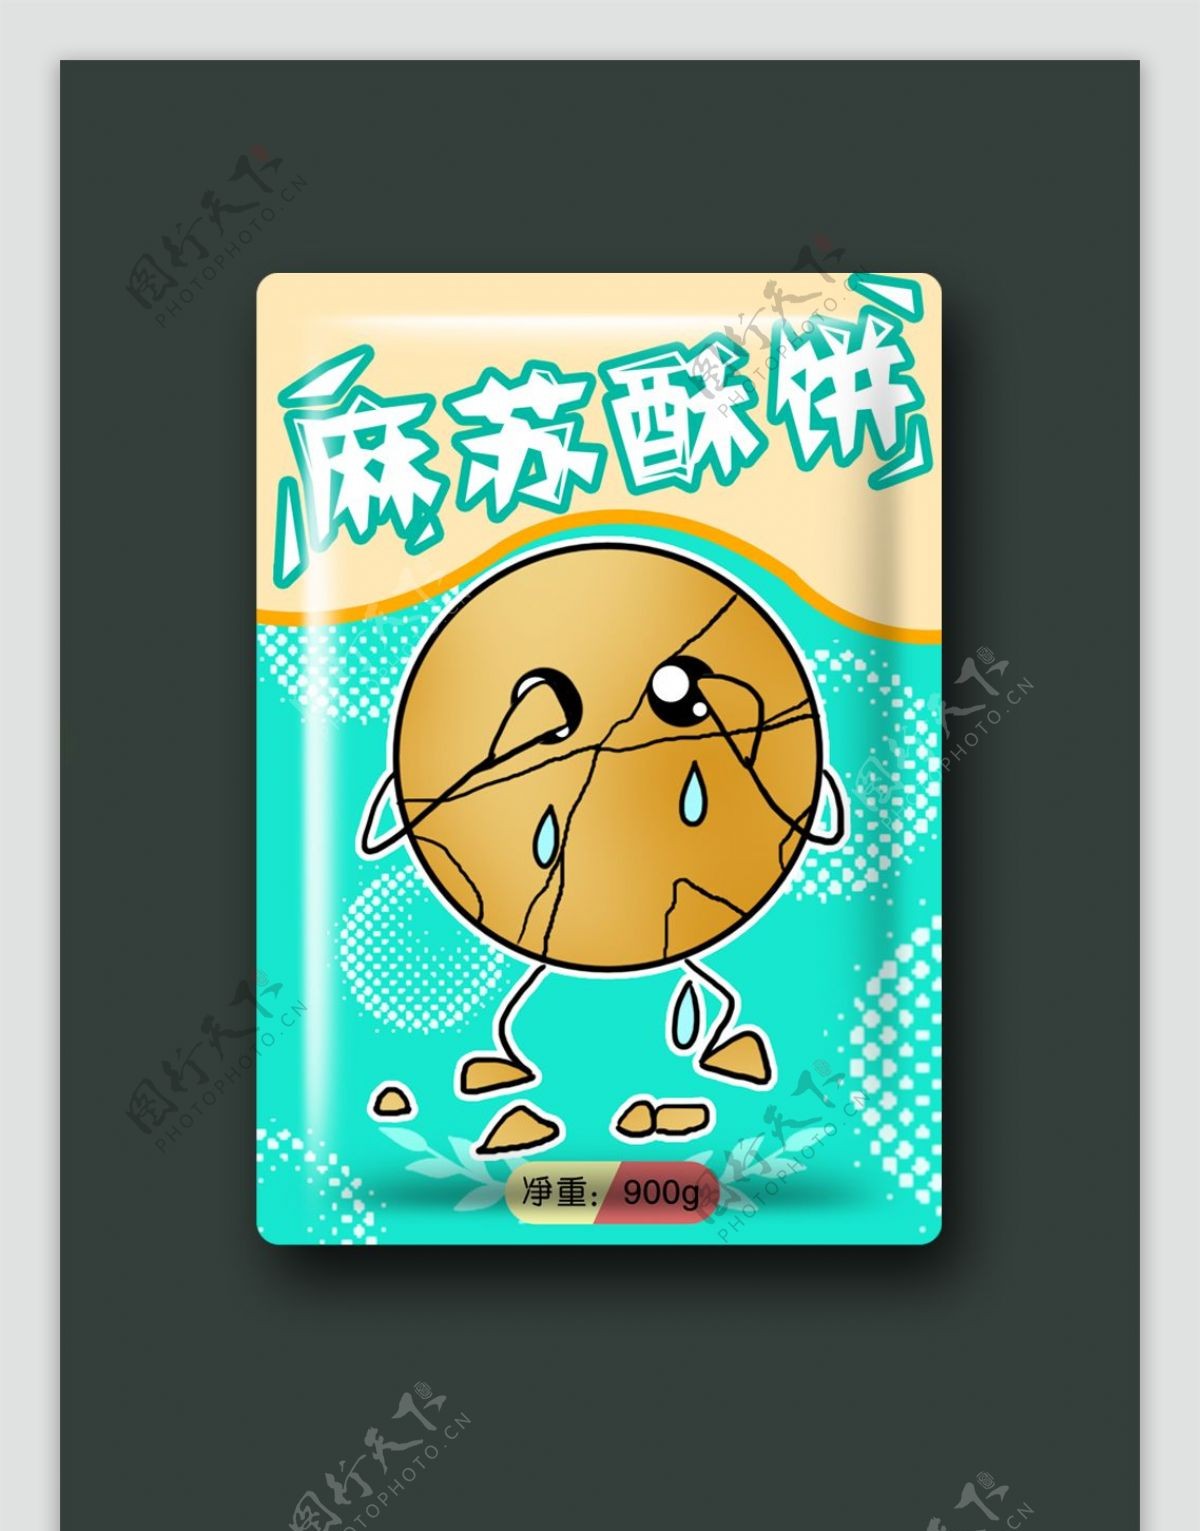 食品包装清新可爱麻苏酥饼插画